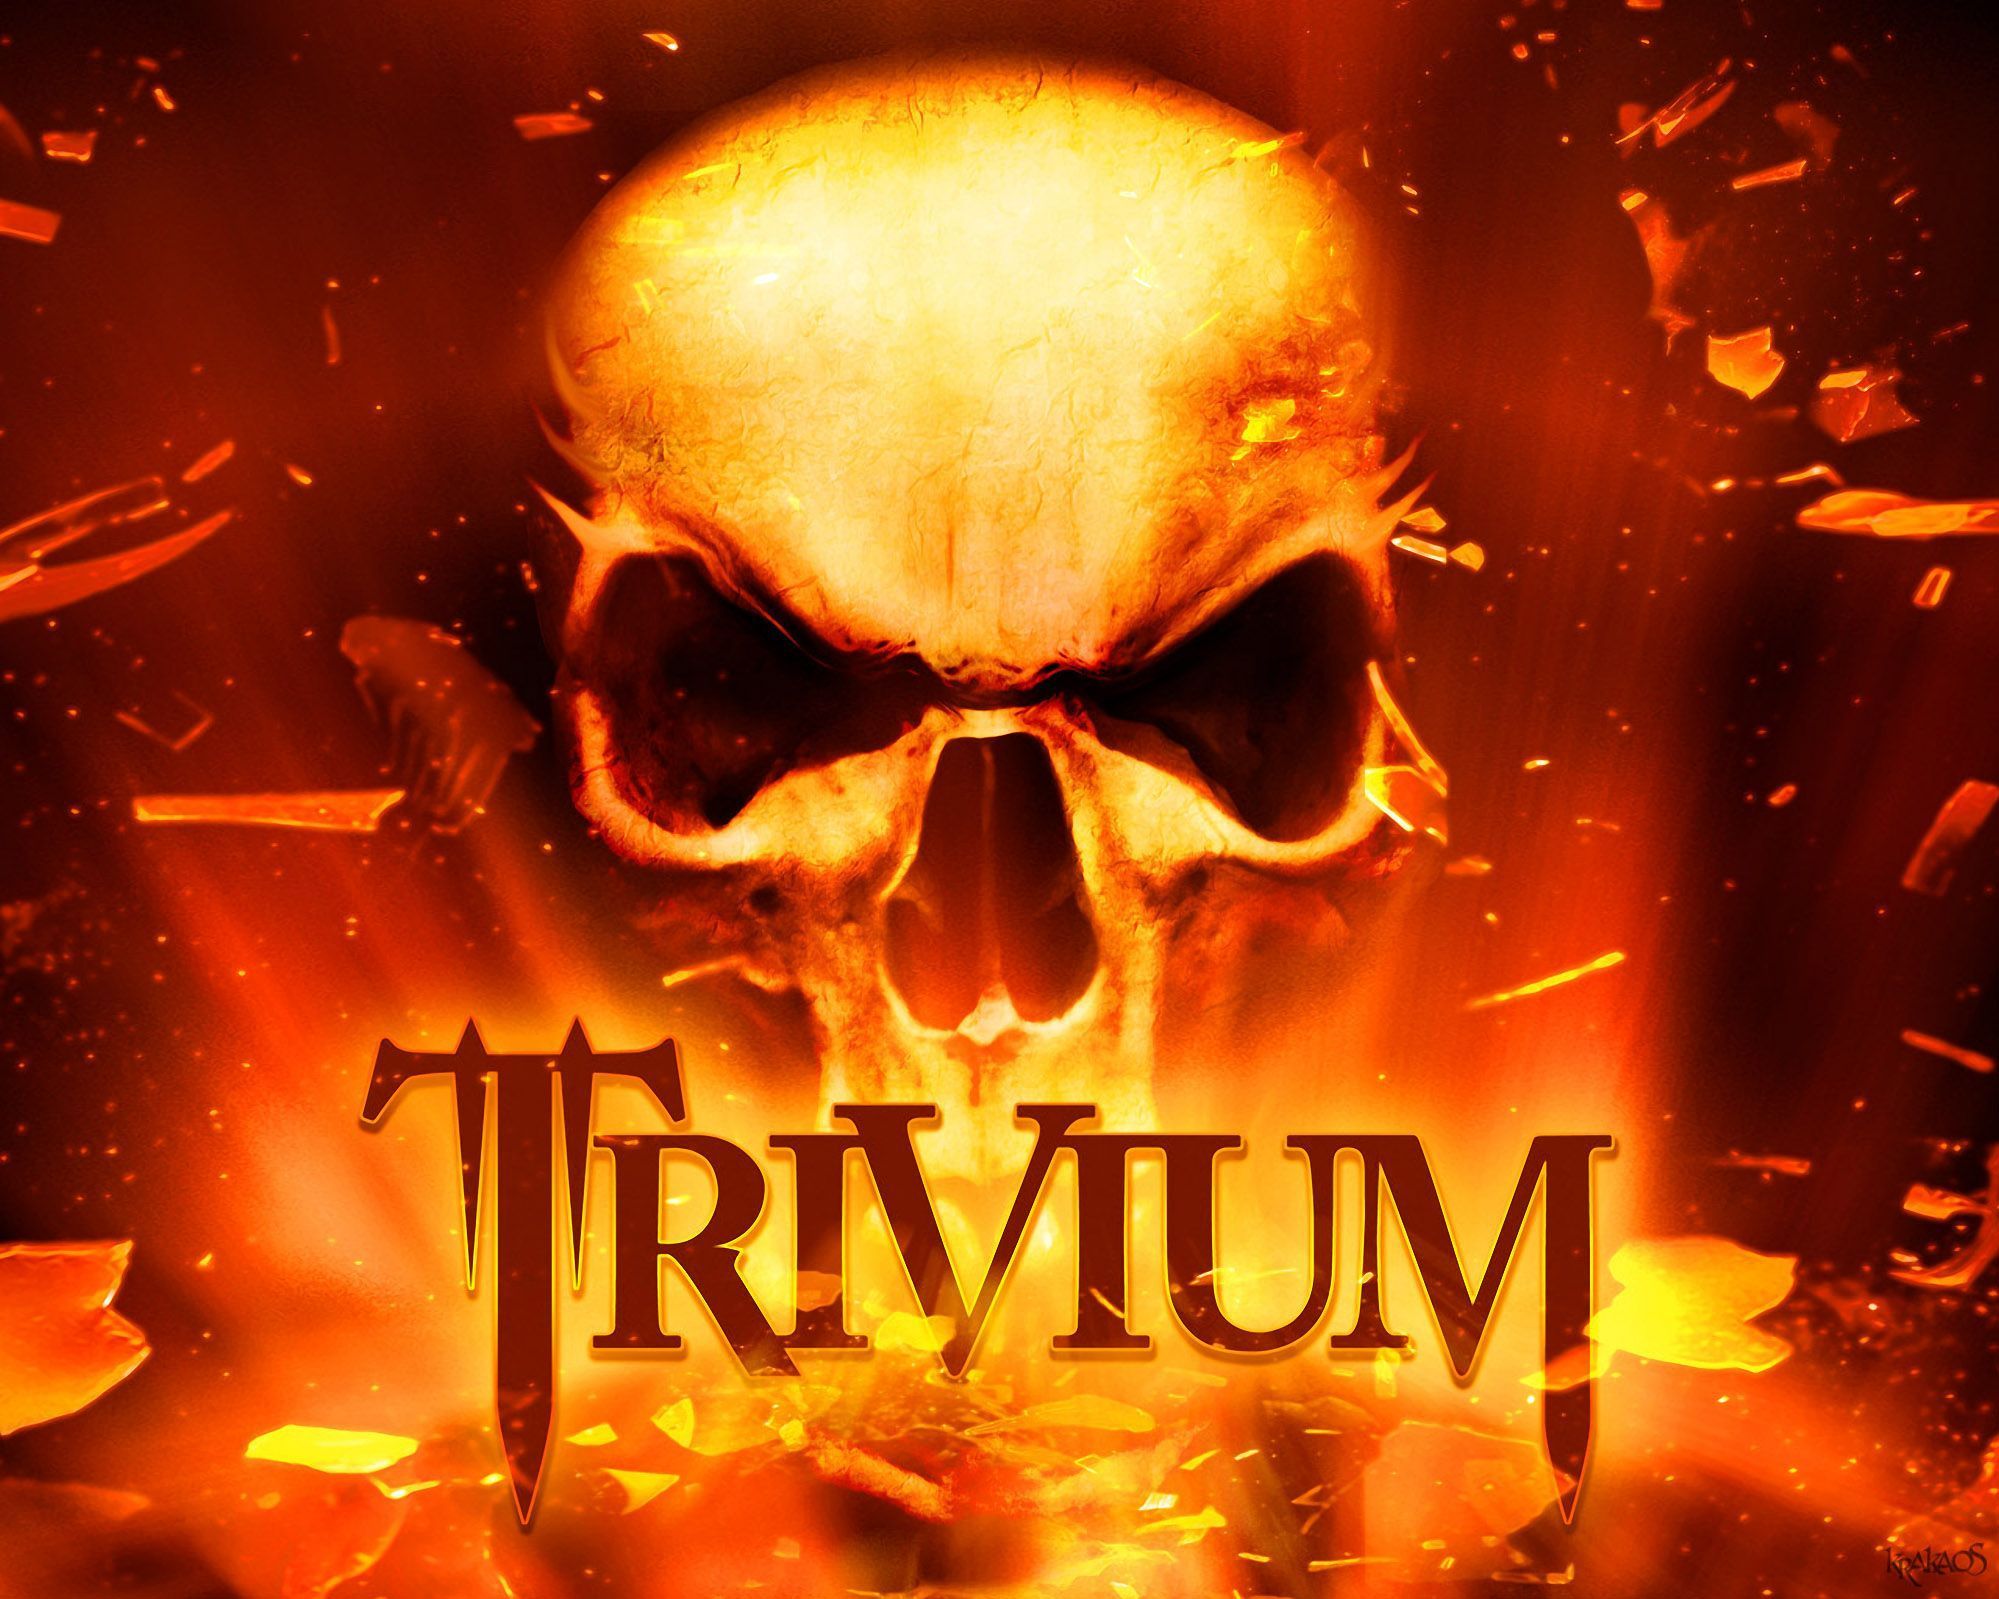 131-Trivium-Krakaos-Skull-Explosion.jpg